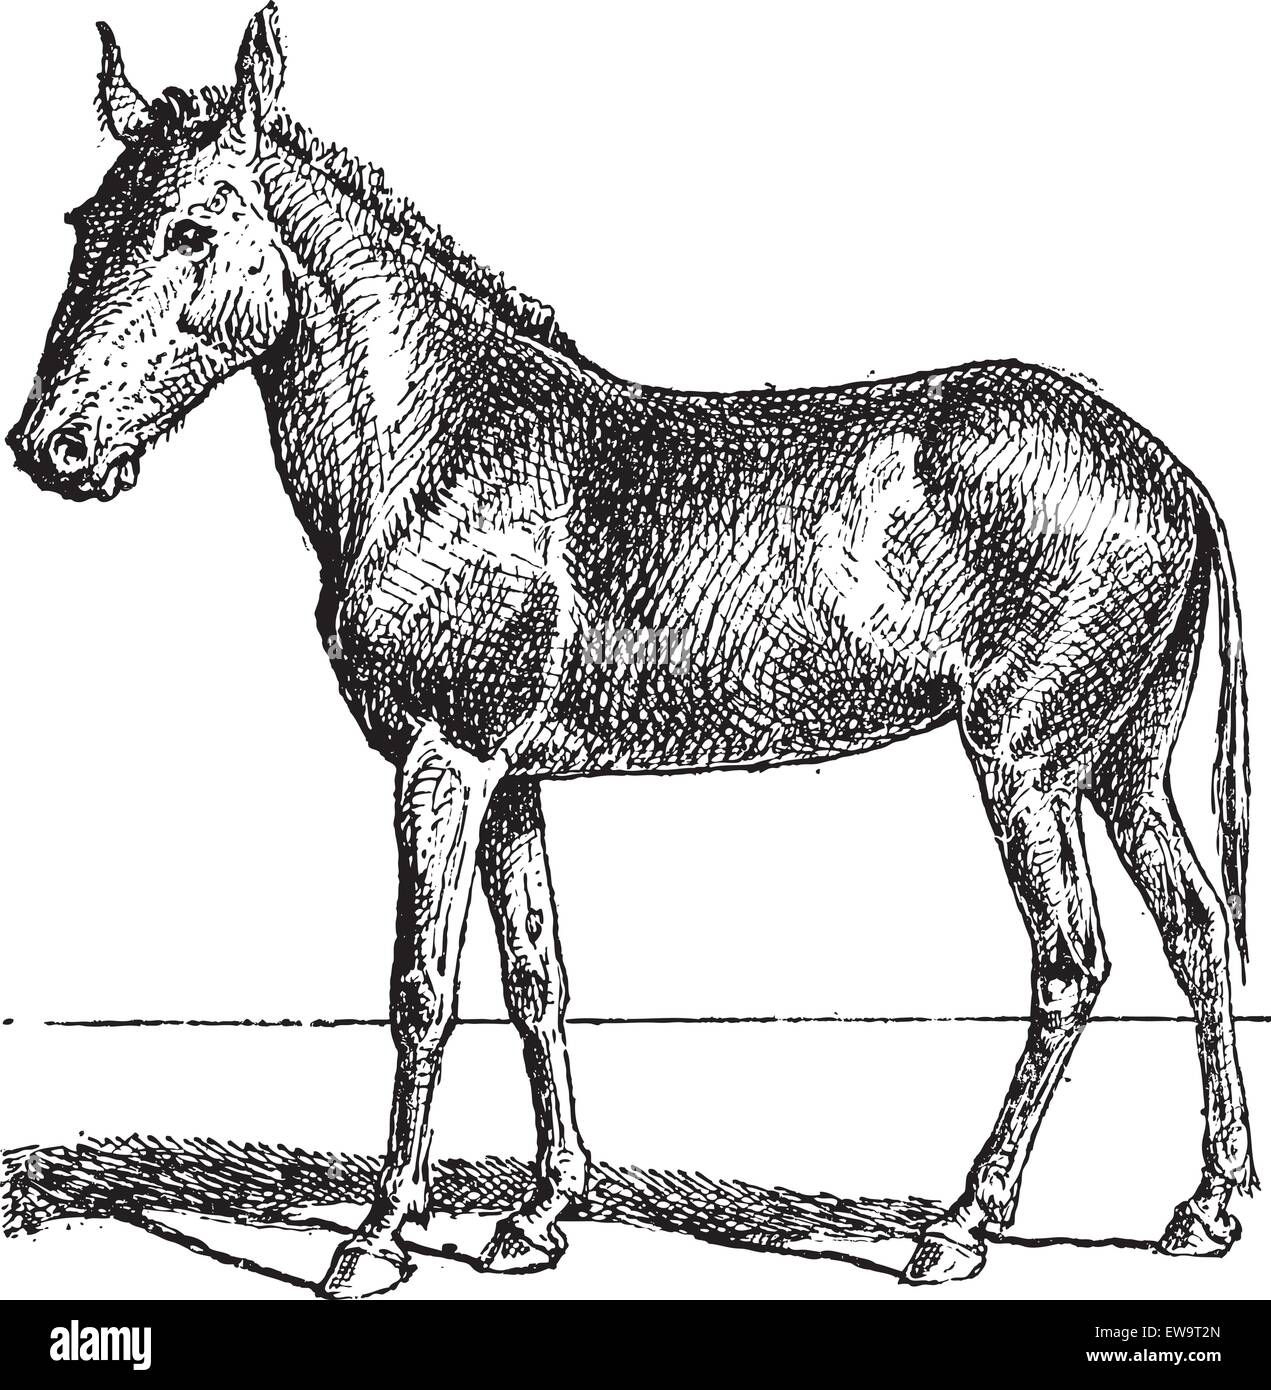 Mule ou d'Equus mulus, vintage engraved illustration. Dictionnaire des mots et des choses - Larive et Fleury - 1895 Illustration de Vecteur